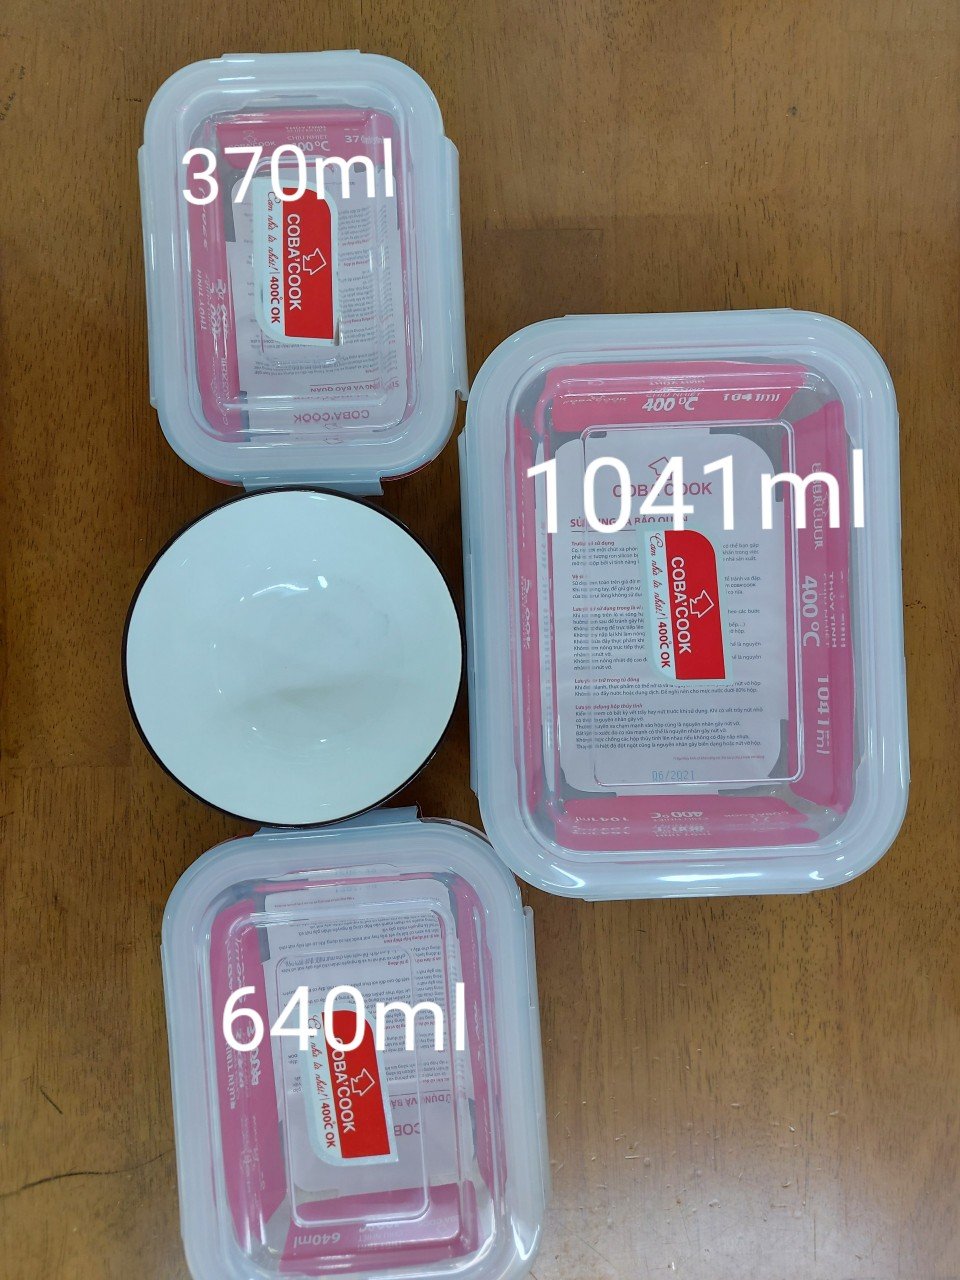 Bộ 3 hộp thủy tinh trữ thức ăn thực phẩm đựng cơm chịu nhiệt COBACOOK hộp chữ nhật dung tích 640ml -CCL63